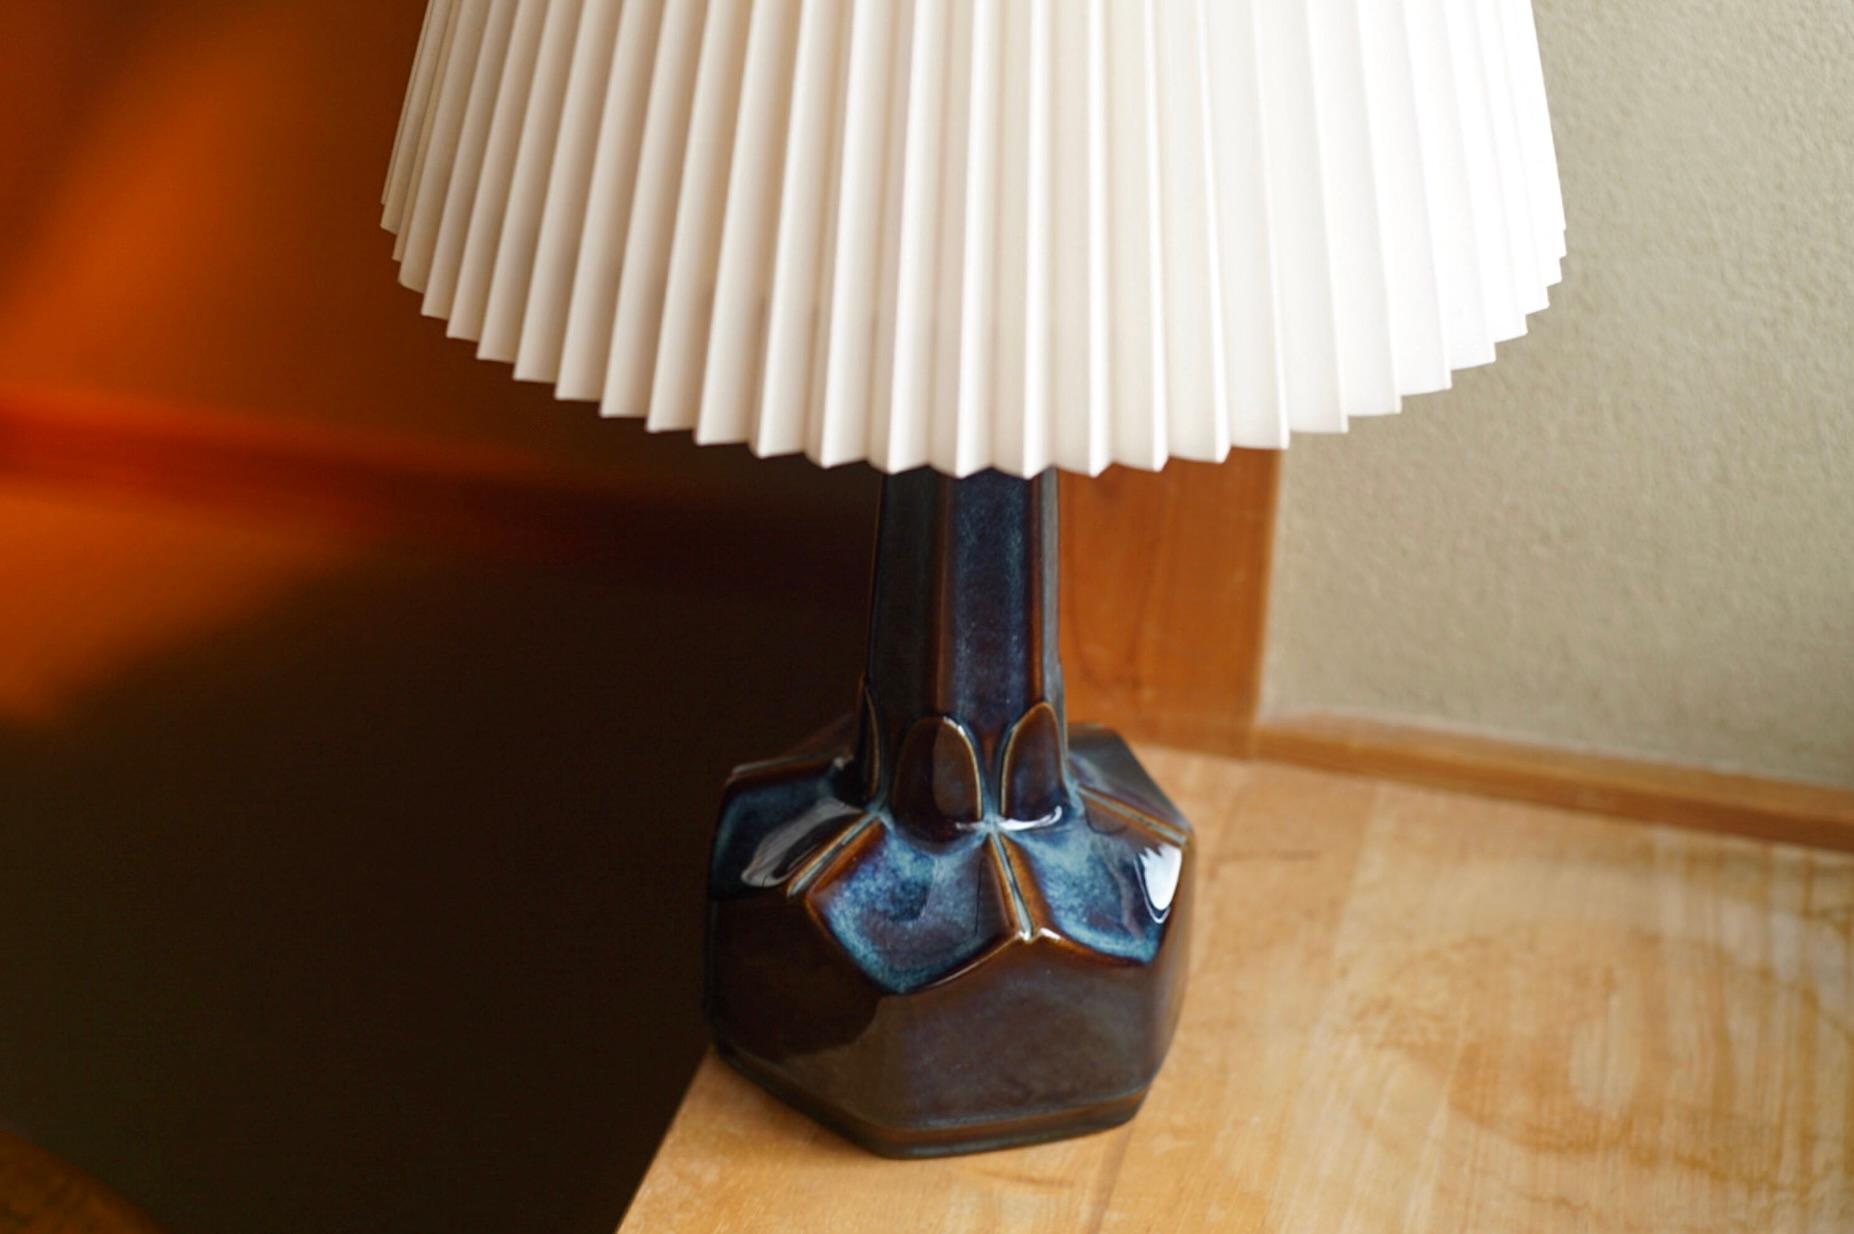 Lampe de table en grès fabriquée à la main par Einar Jphansen pour Danish Søholm, situé sur l'île de Bornholm au Danemark, dans les années 1960.

Estampillé et signé sur la base.

Vendu sans abat-jour. La hauteur comprend la douille. Entièrement